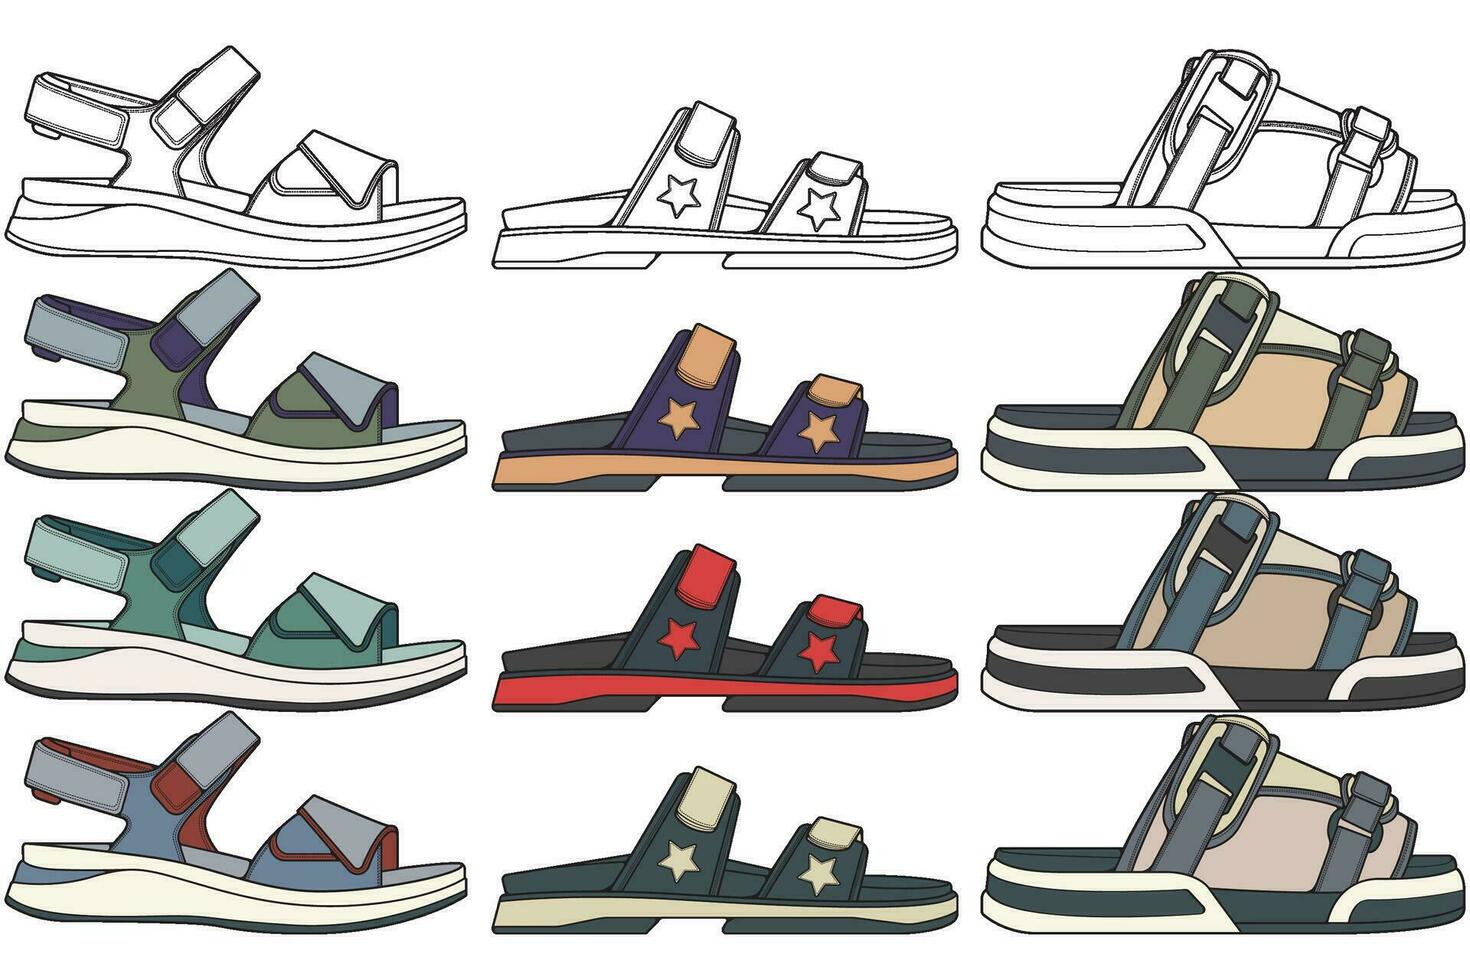 cinghia sandali colorazione disegno vettore, cinghia sandali disegnato nel un' schizzo stile, impacchettare cinghia sandali modello pieno colore, vettore illustrazione.